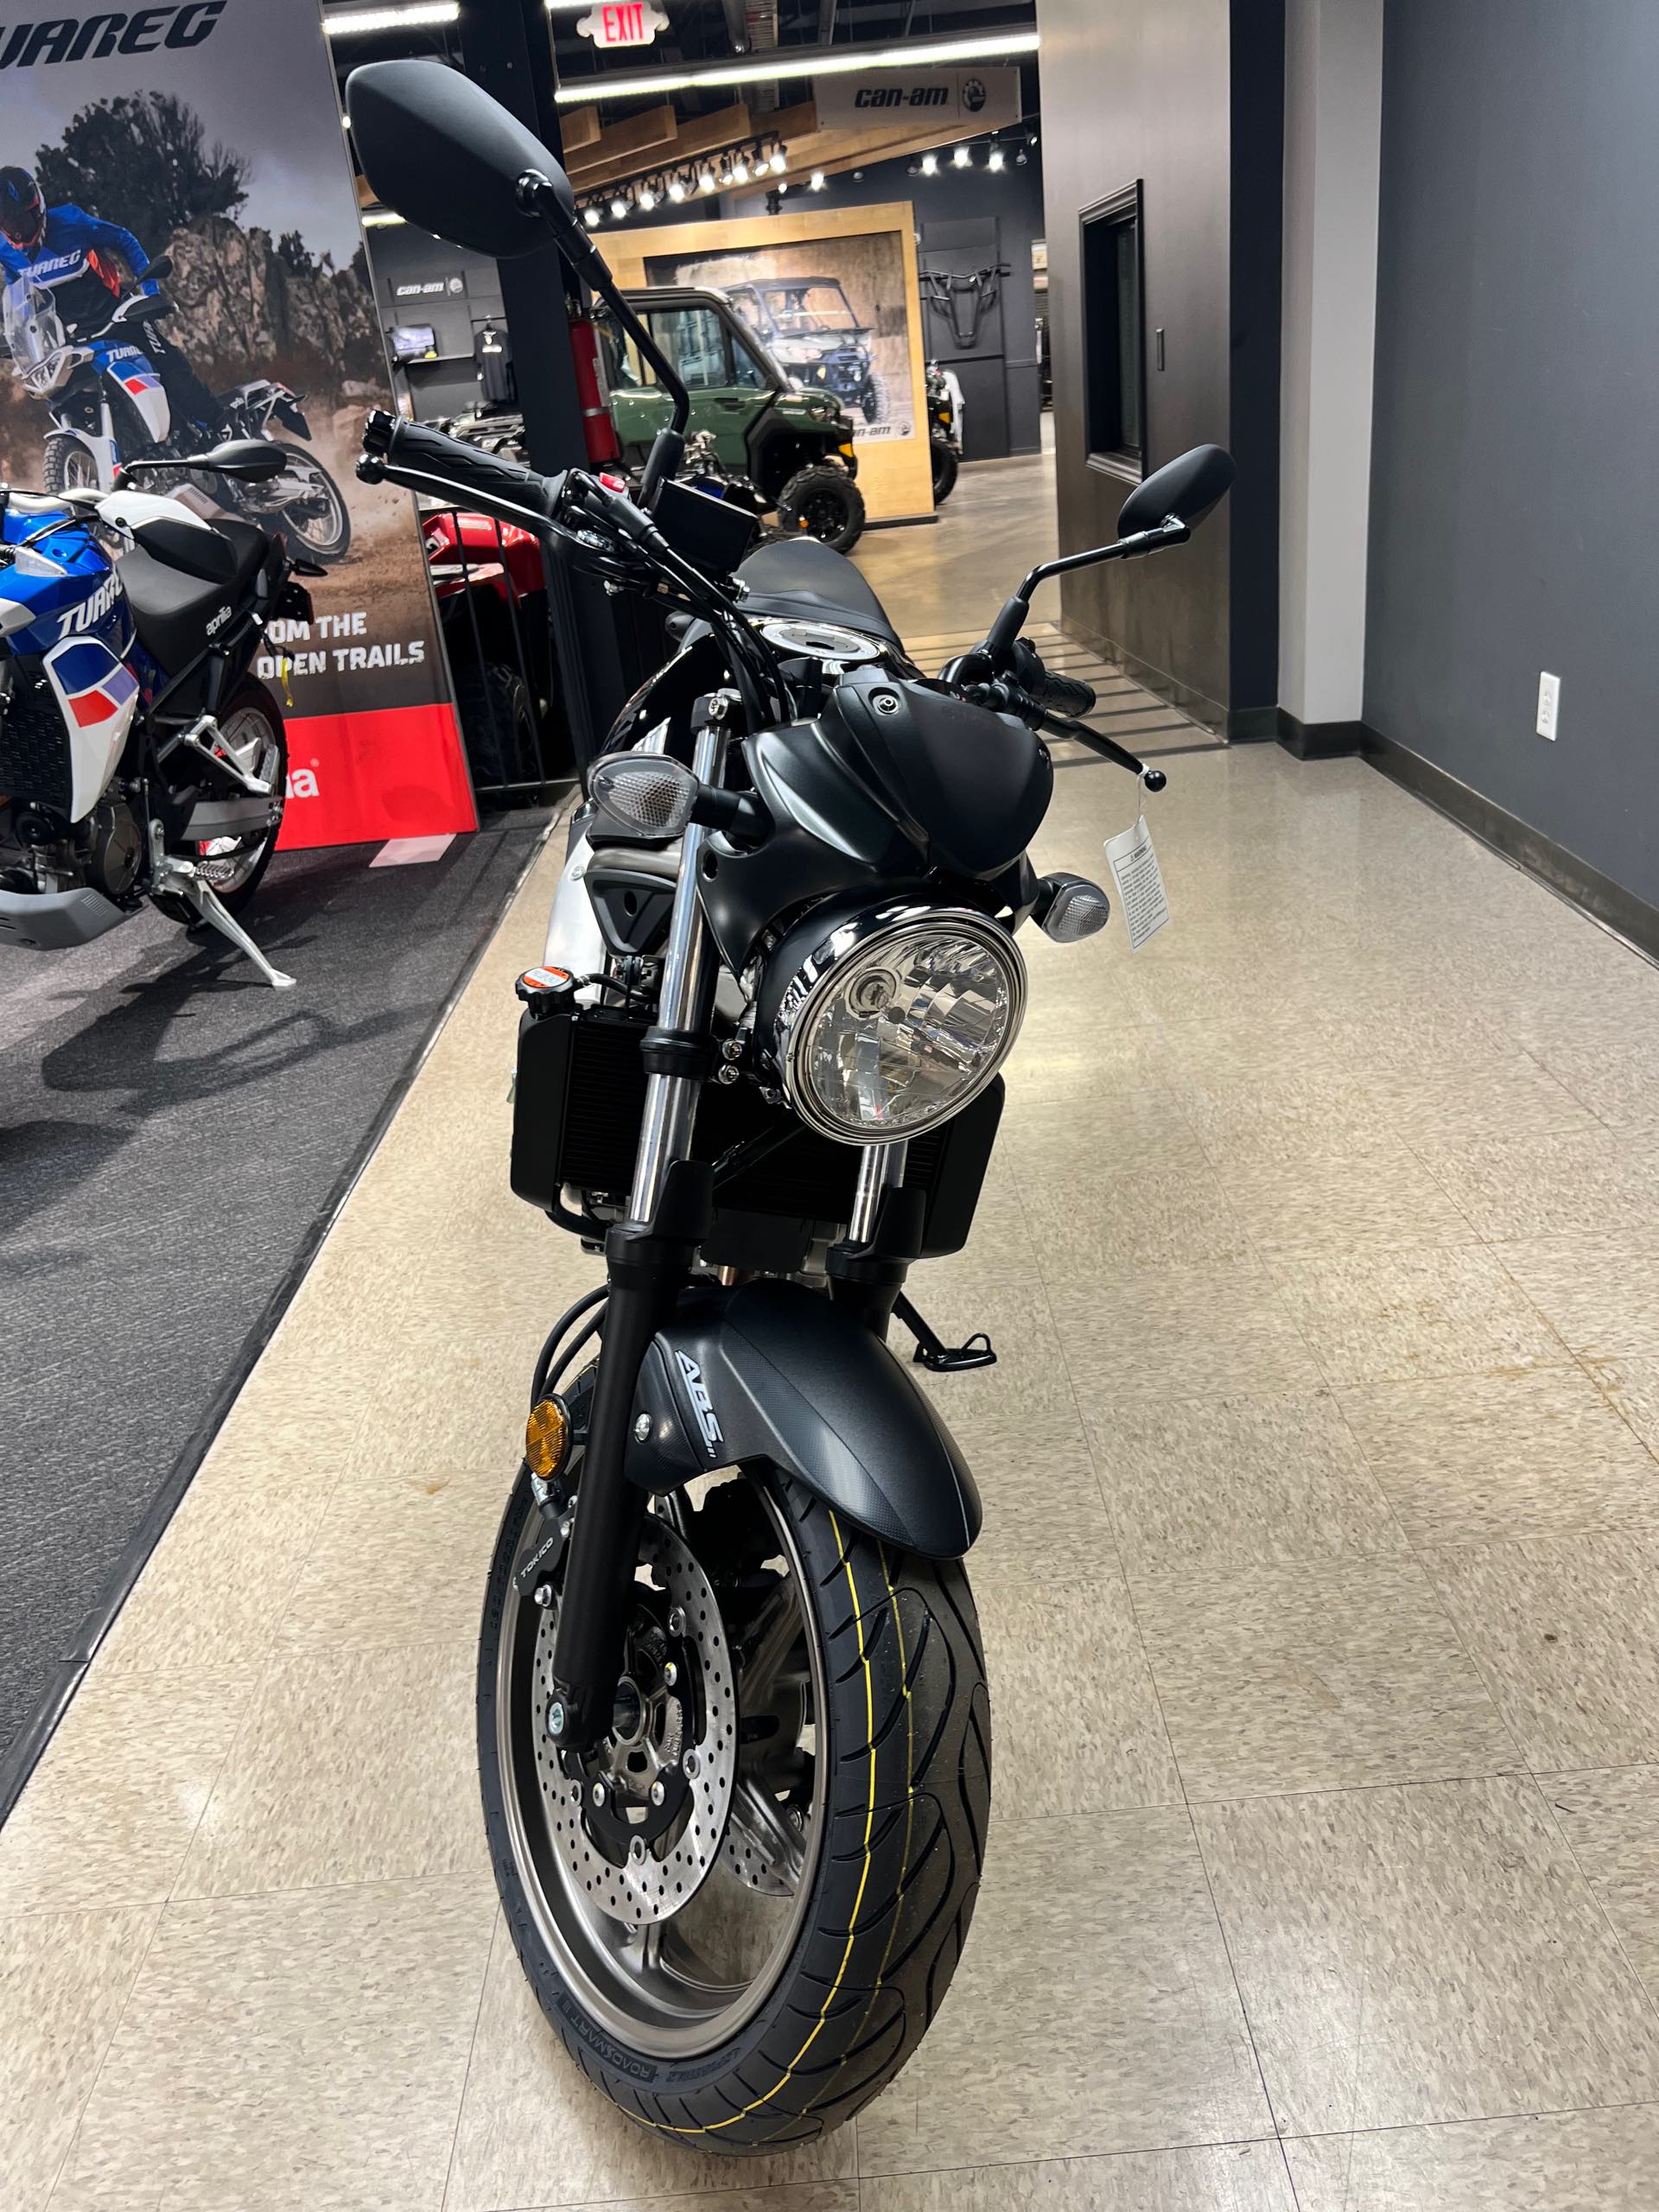 2024 Suzuki SV 650 ABS at Sloans Motorcycle ATV, Murfreesboro, TN, 37129